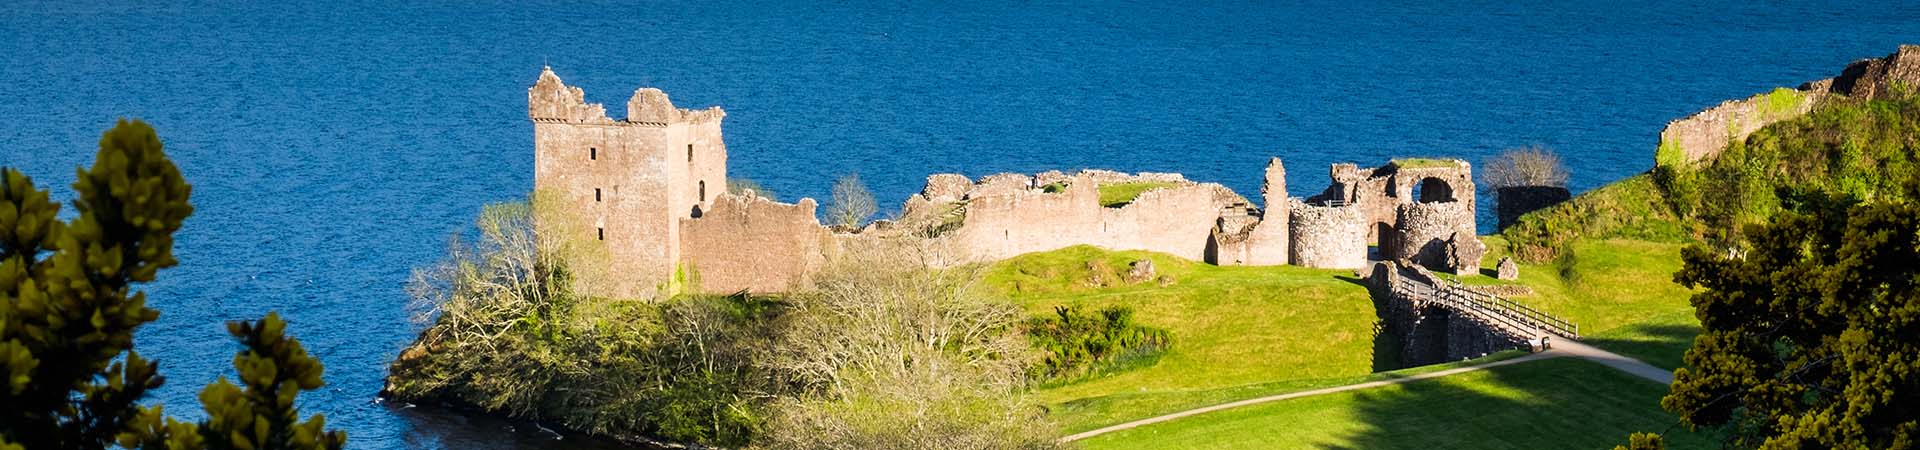 Castle Urquhart by Loch Ness